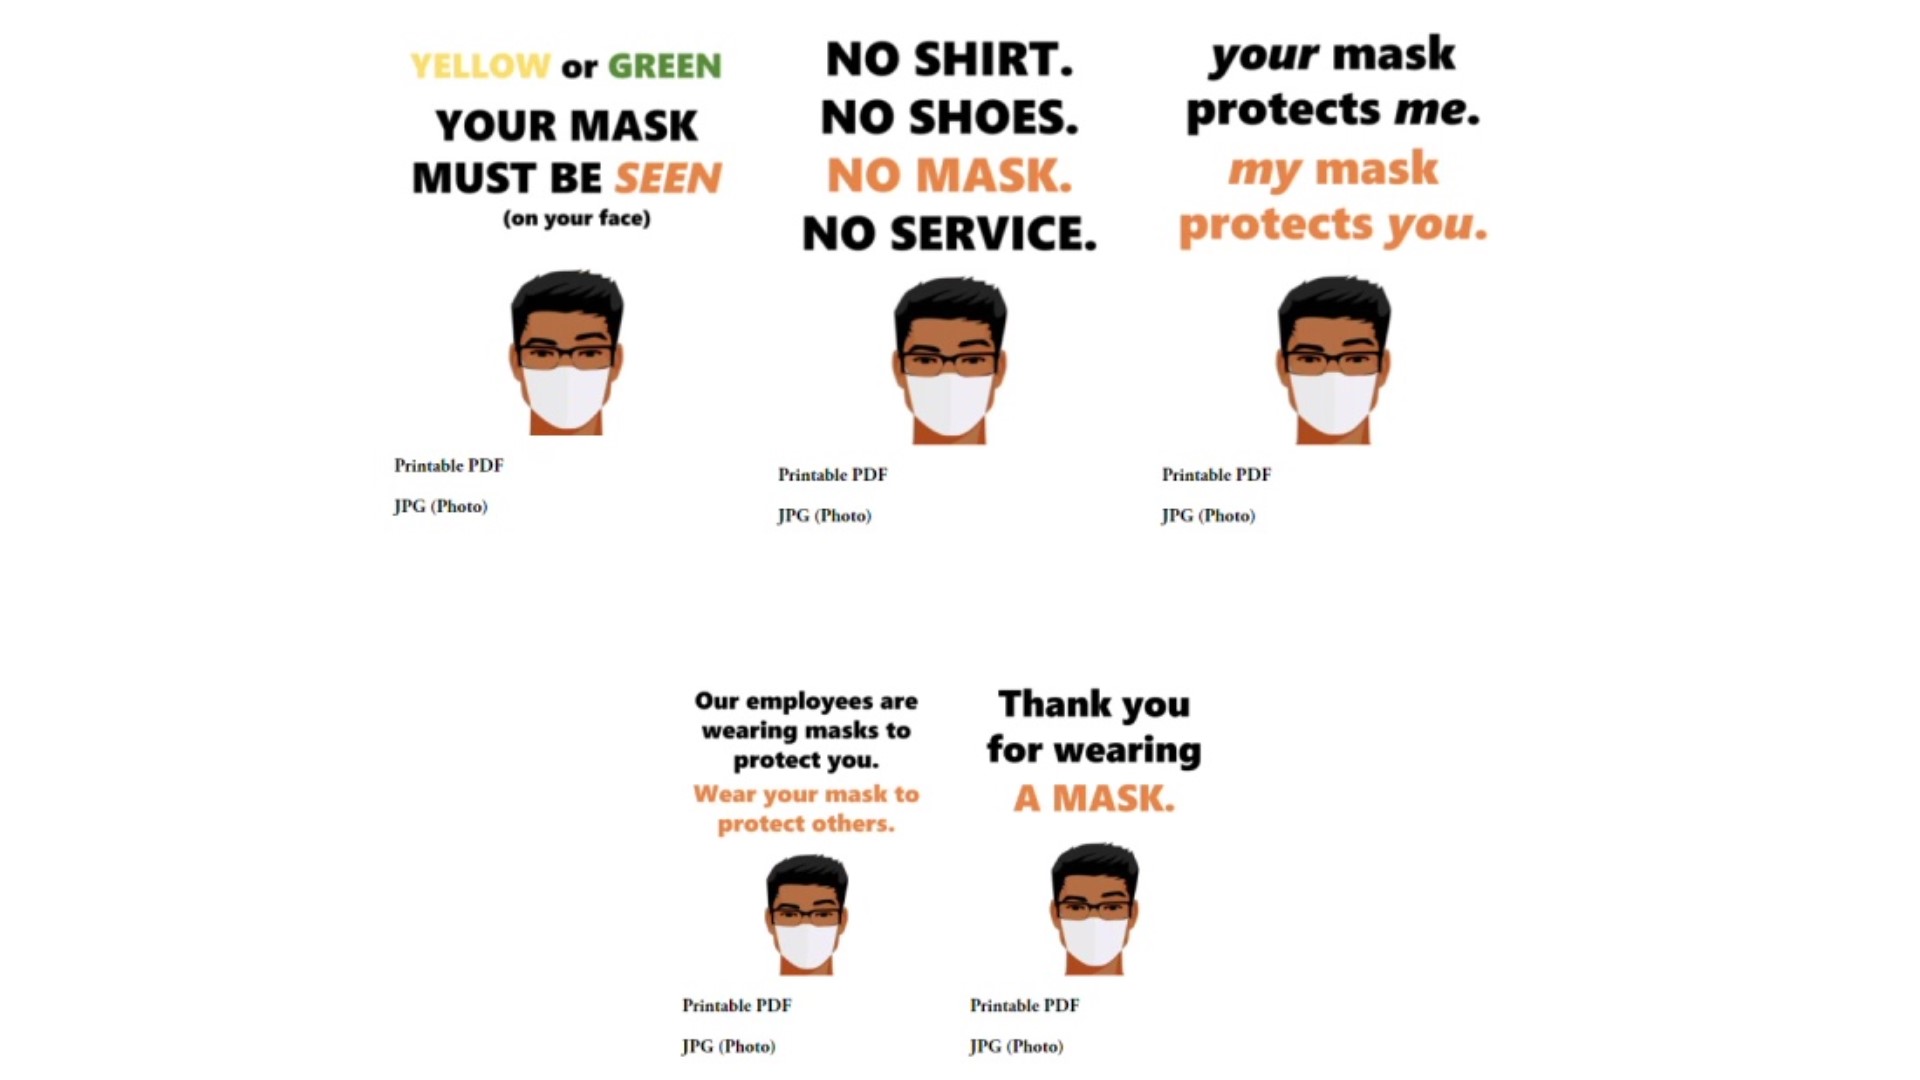 Spotlight: Orange is asking people to wear a mask.